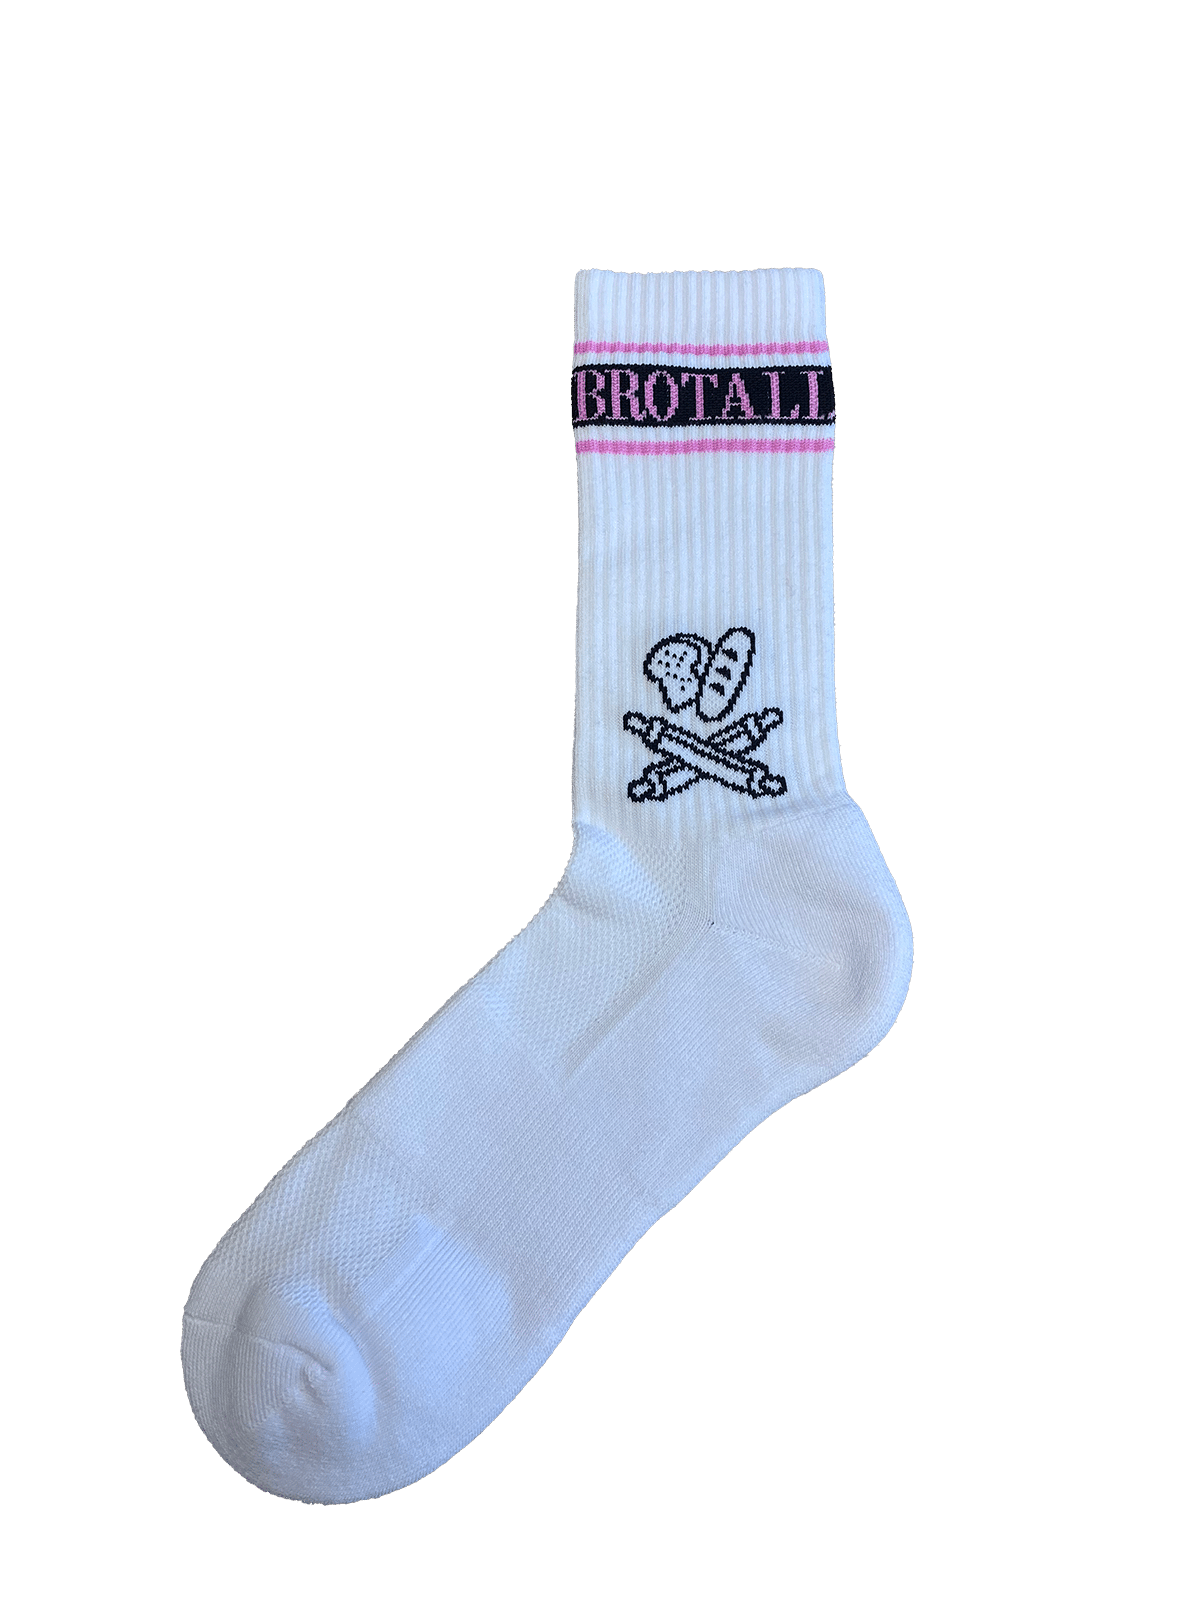 Socken|Brotali